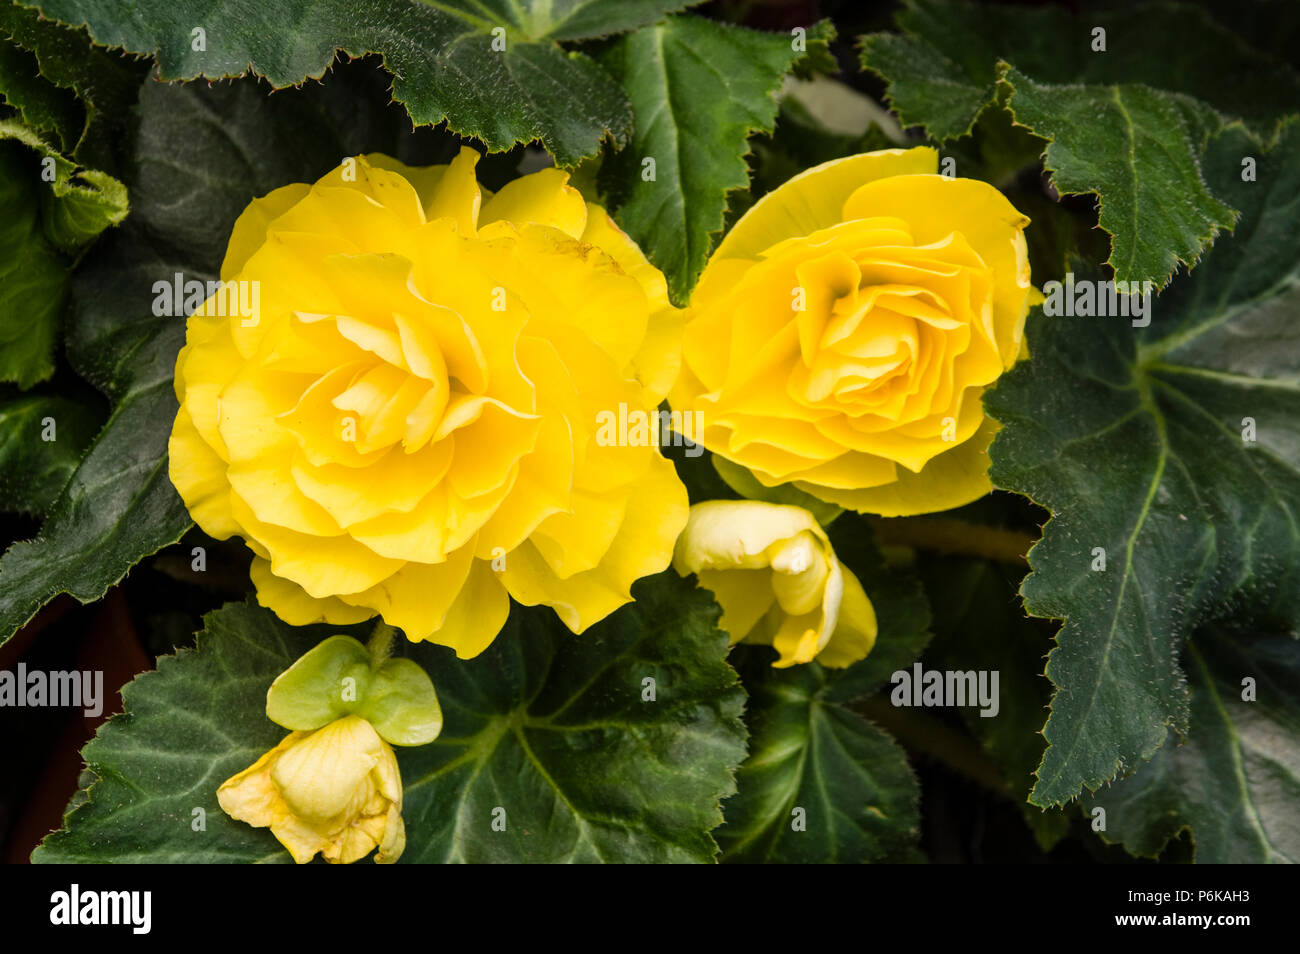 Begonia planta con hojas verdes y flores amarillas Fotografía de stock -  Alamy